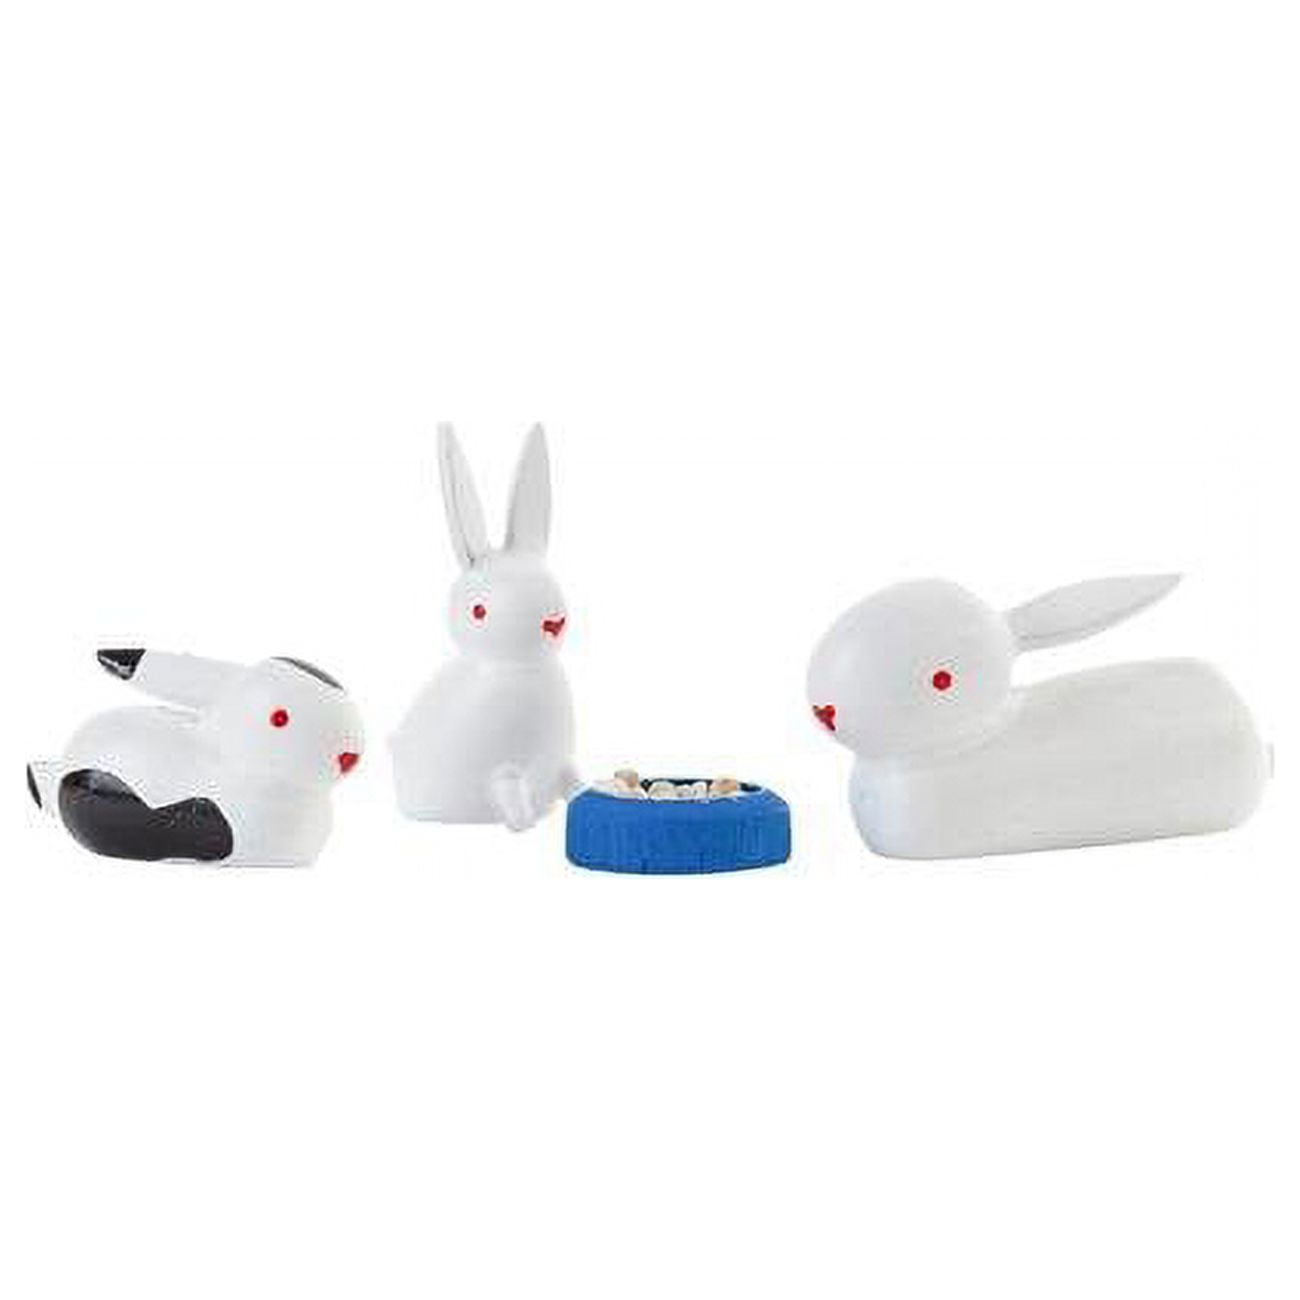 076-002 Dregeno Easter Ornament Rabbit Family